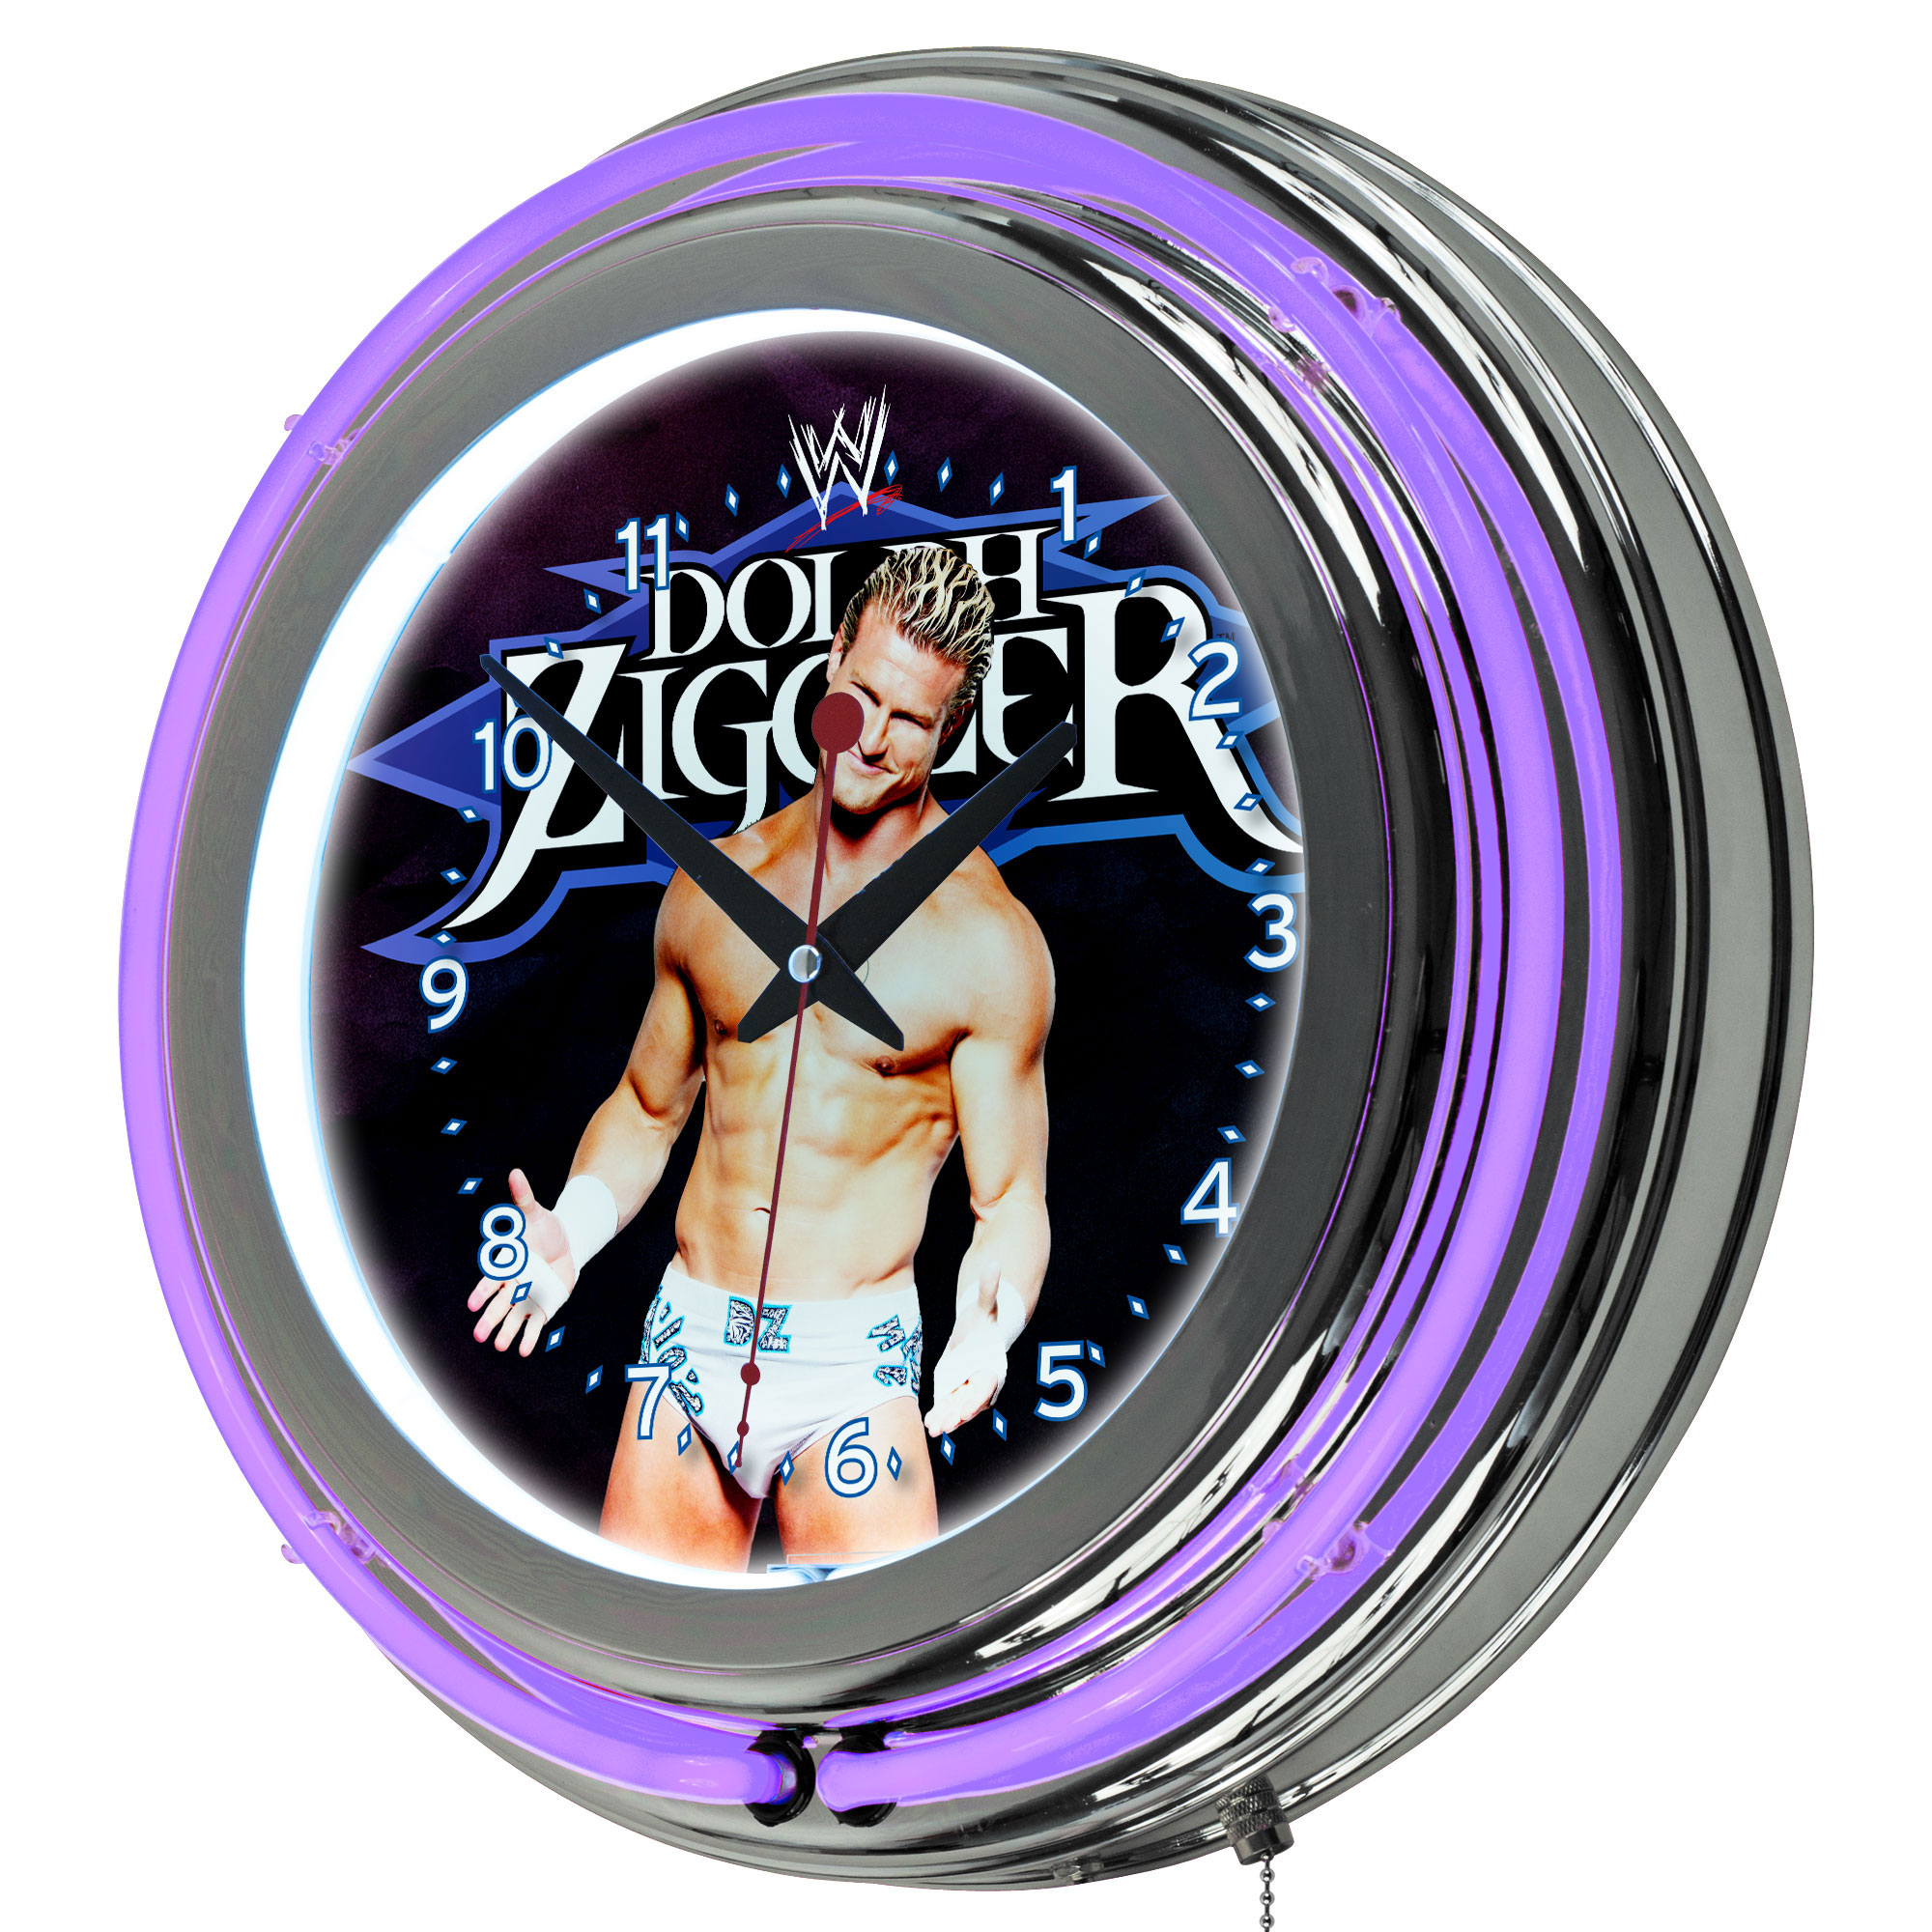 WWE Dolph Ziggler Neon Clock - 14 inch Diameter